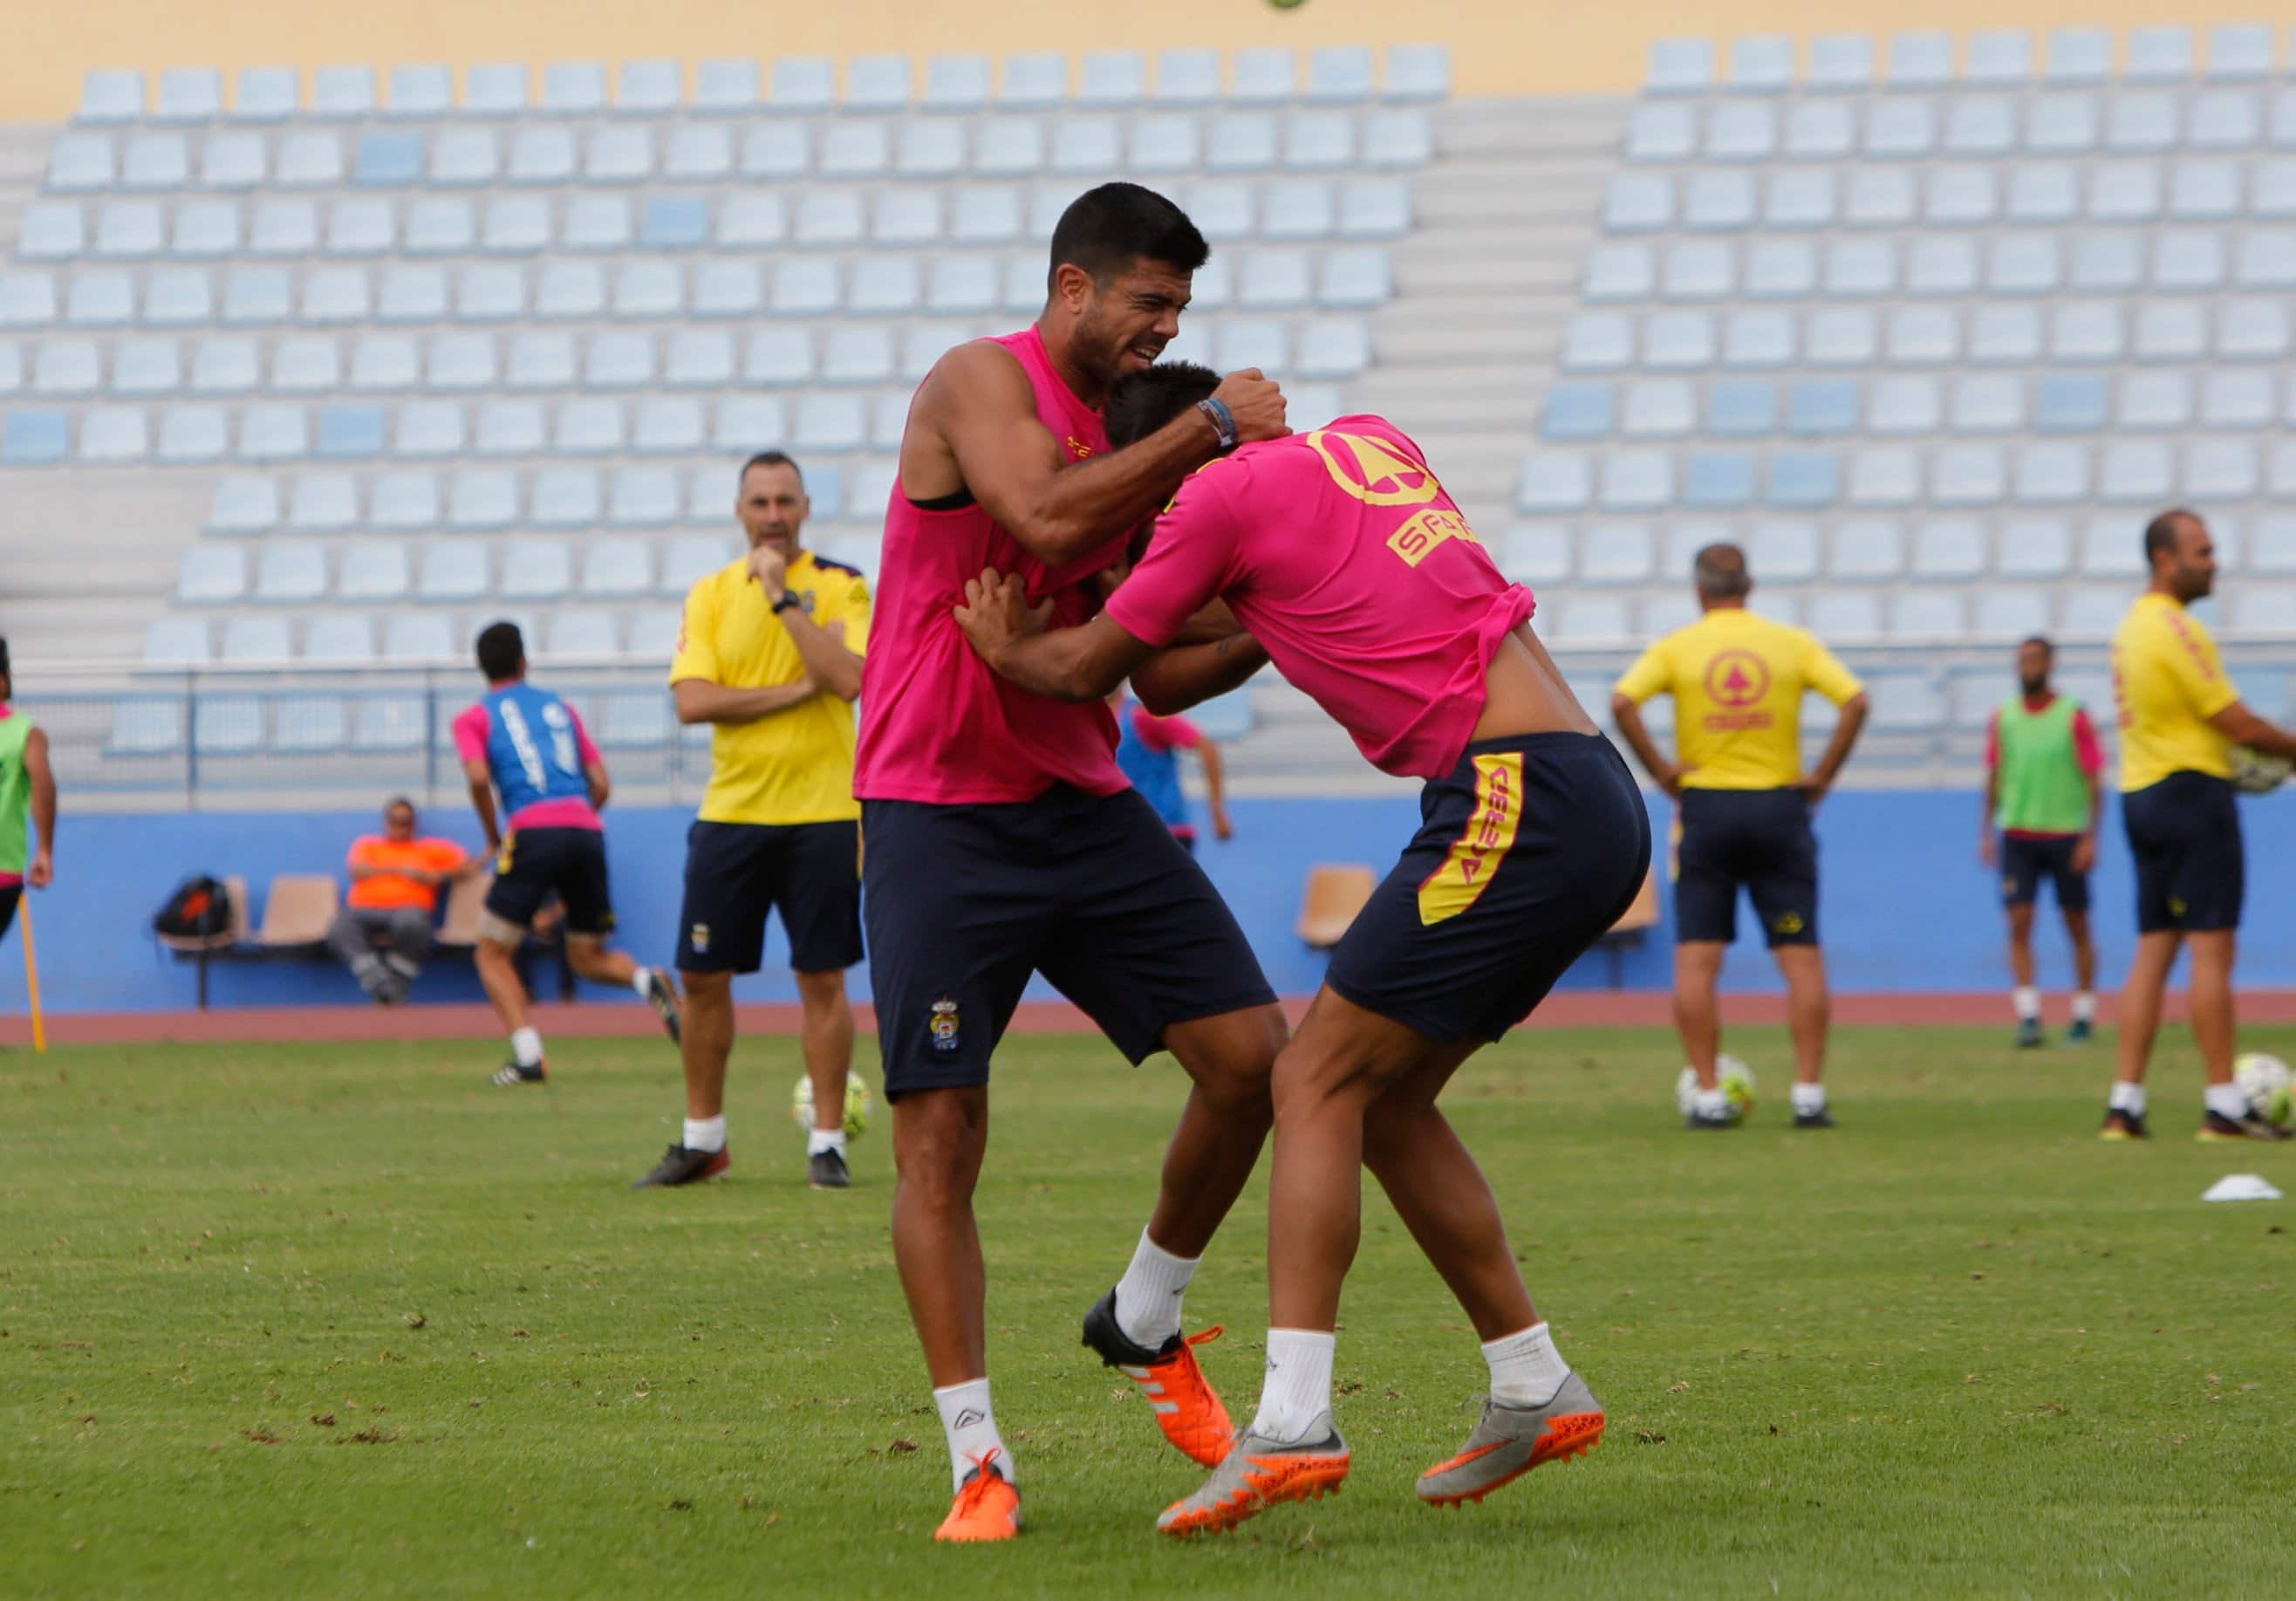 Dura pelea entre dos jugadores de Las Palmas en el entrenamiento (video)